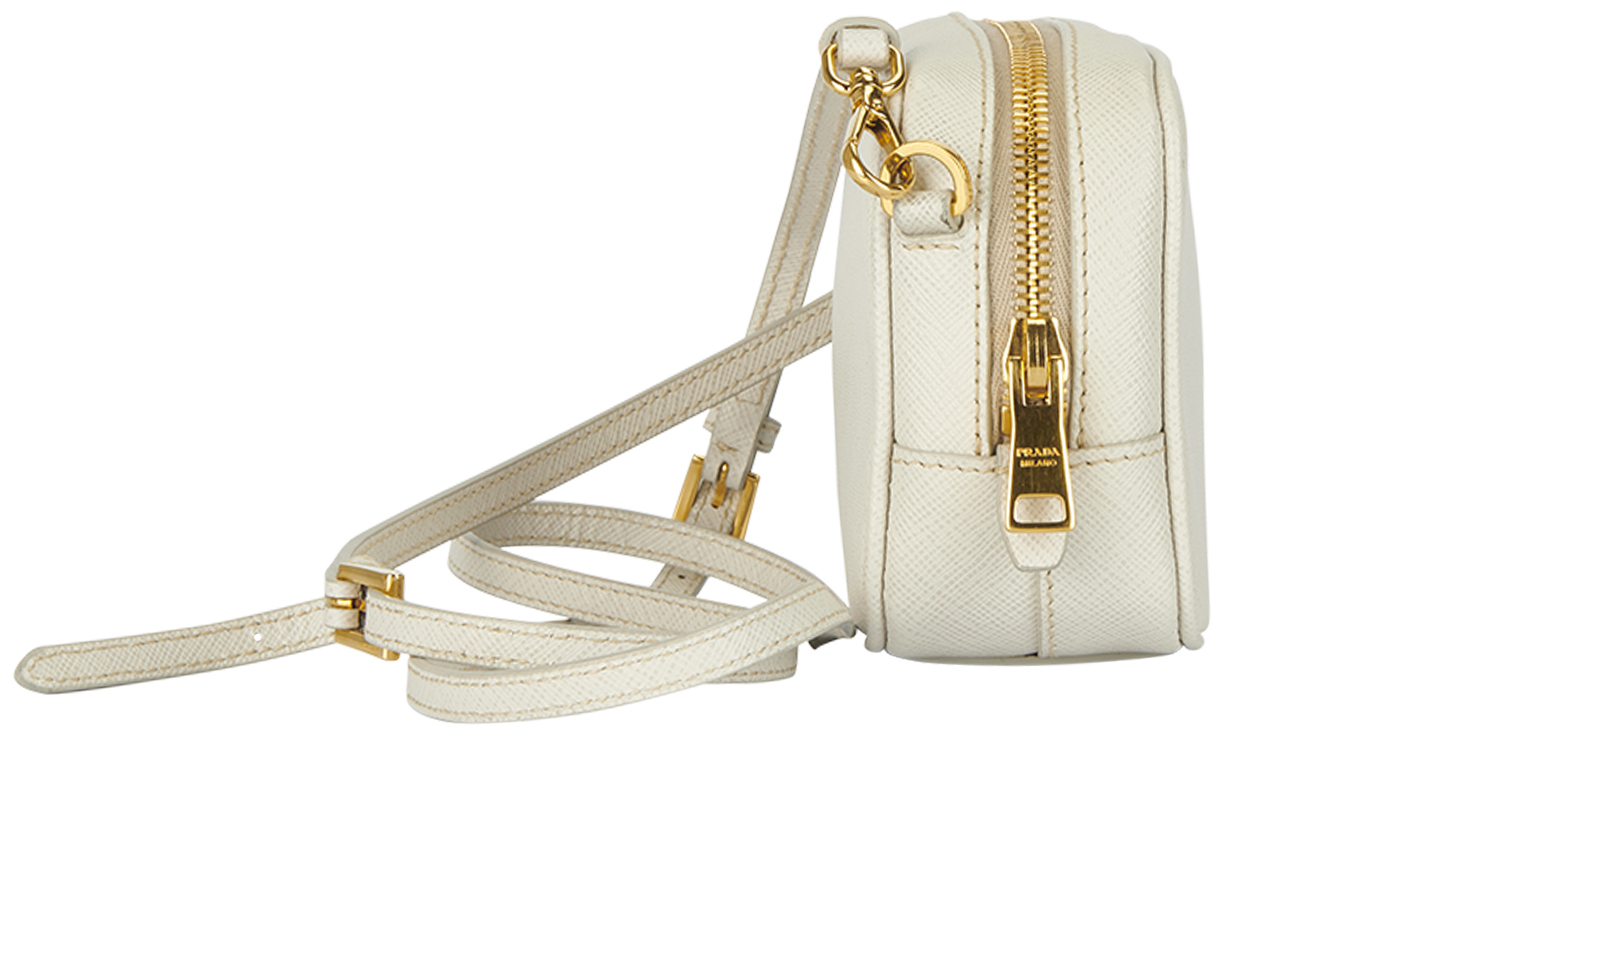 Prada, Bags, Prada Saffiano Fuoco Soft Calfskin Leather Chain Crossbody  Bag